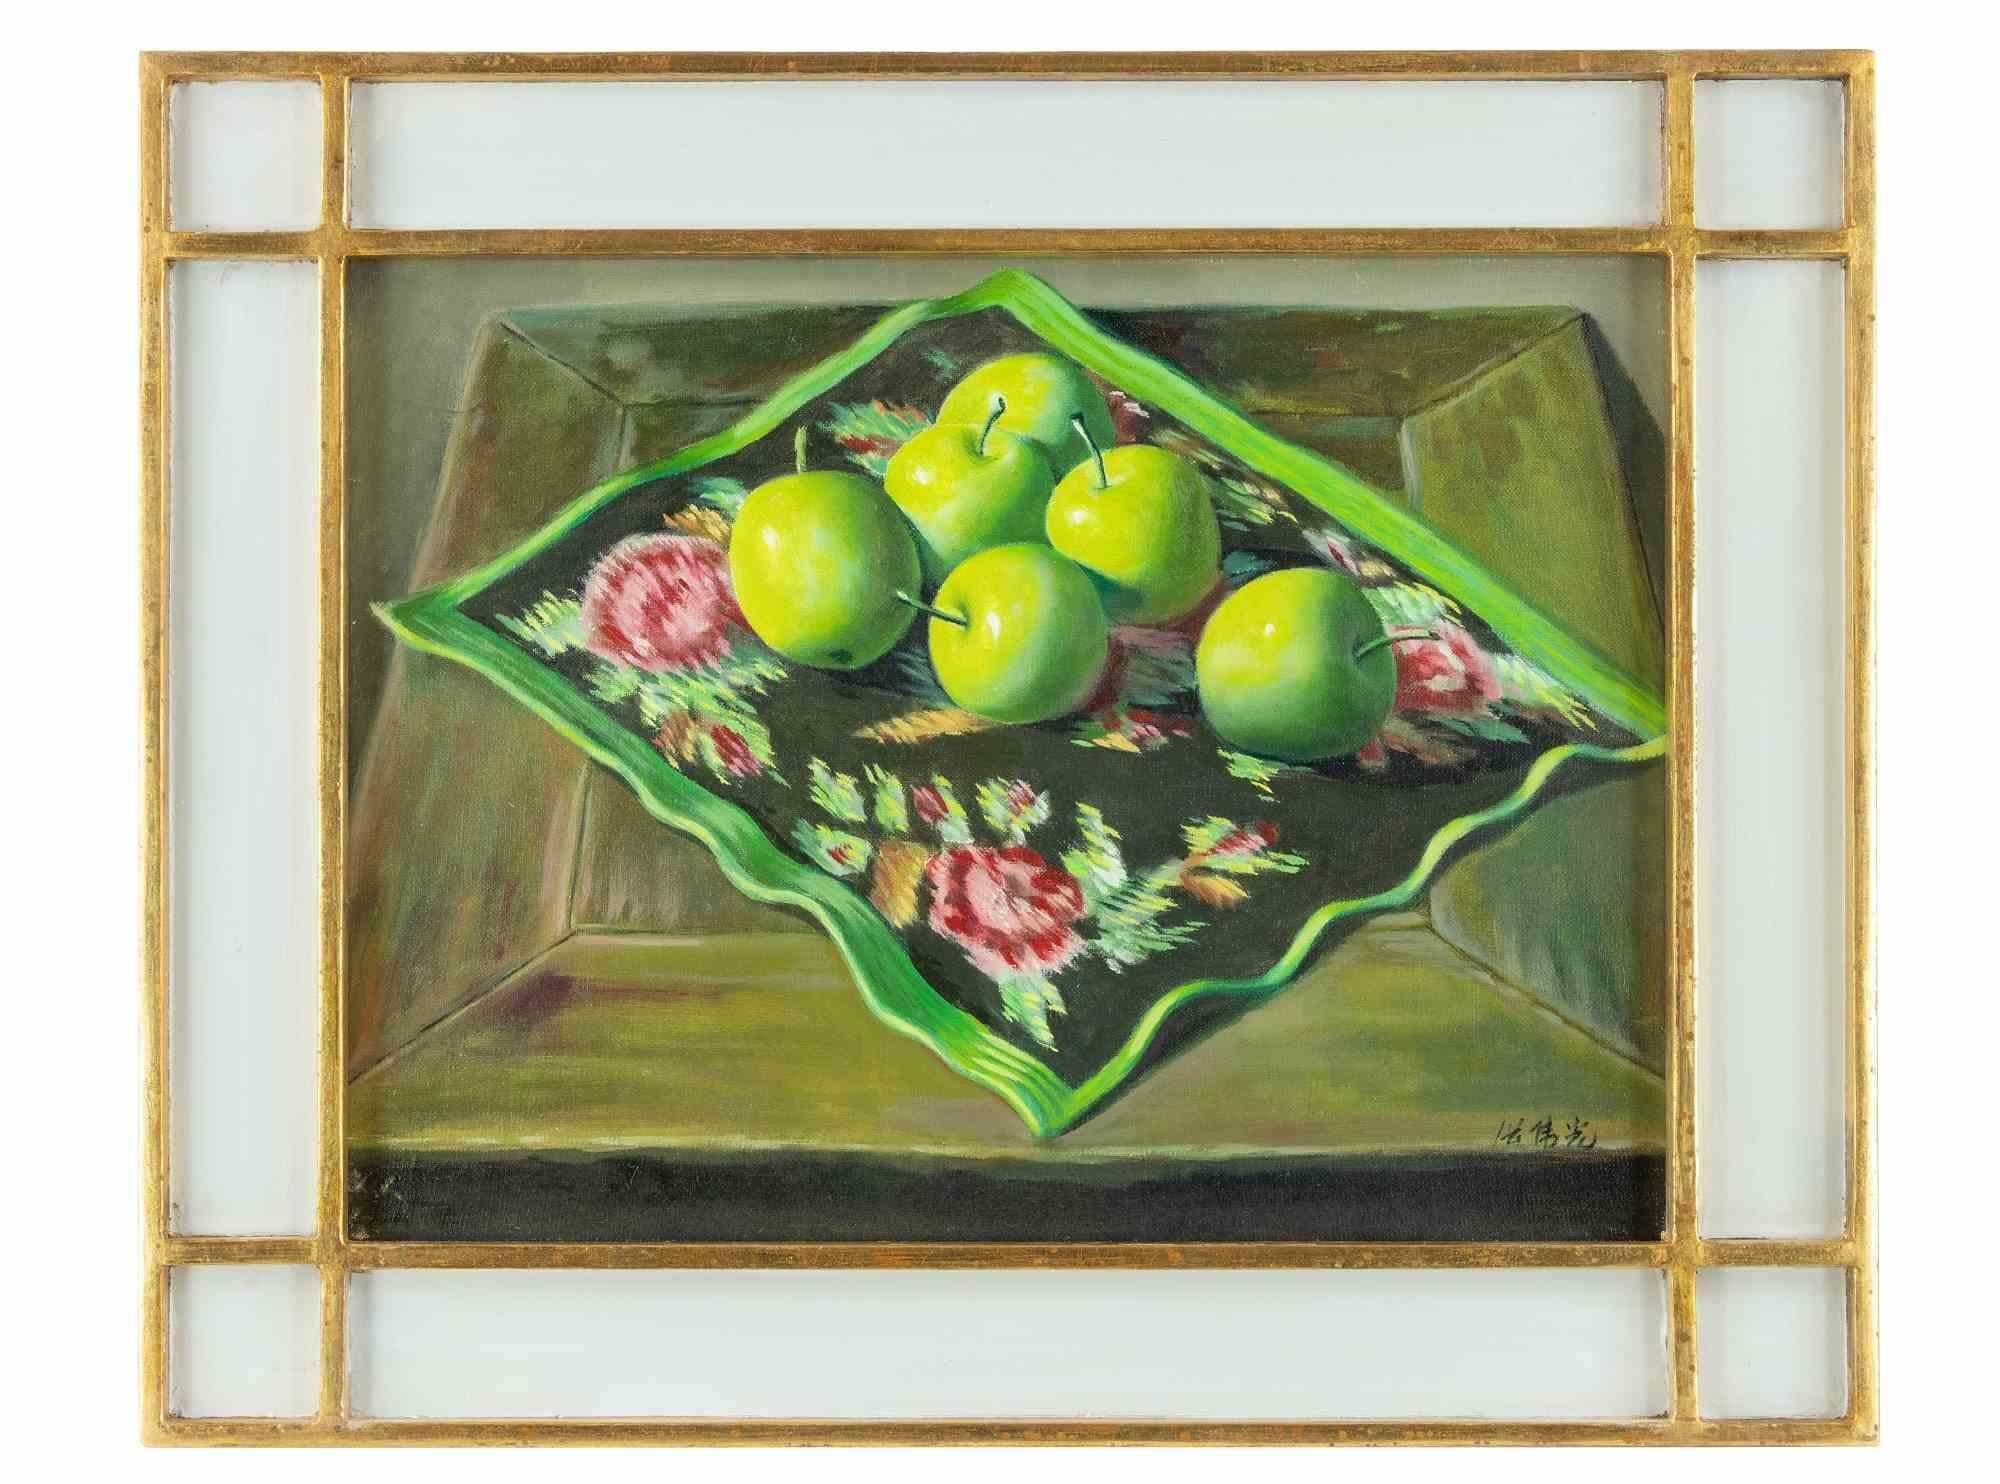 Six pommes vertes est une œuvre d'art originale réalisée en 2006 par Zhang Wei Guang (Miroir).

Belle peinture à l'huile sur toile. 

Signé à la main dans la marge inférieure.

Inclut le cadre.

Notes manuscrites au dos

Zhang Wei Guang, également